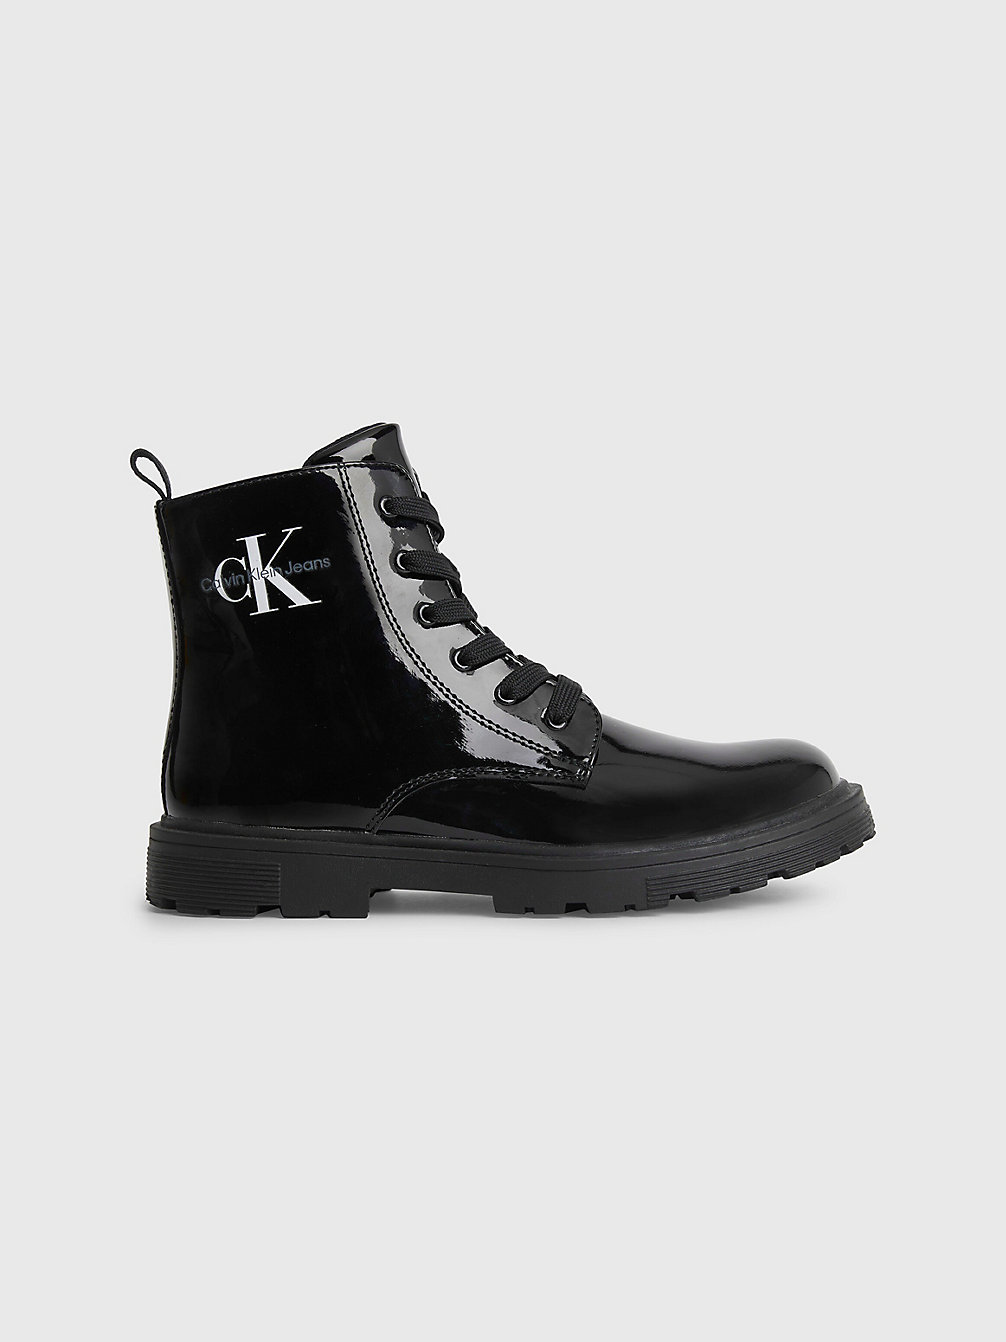 BLACK > Kinder-Boots Aus Recyceltem Lackleder > undefined girls - Calvin Klein